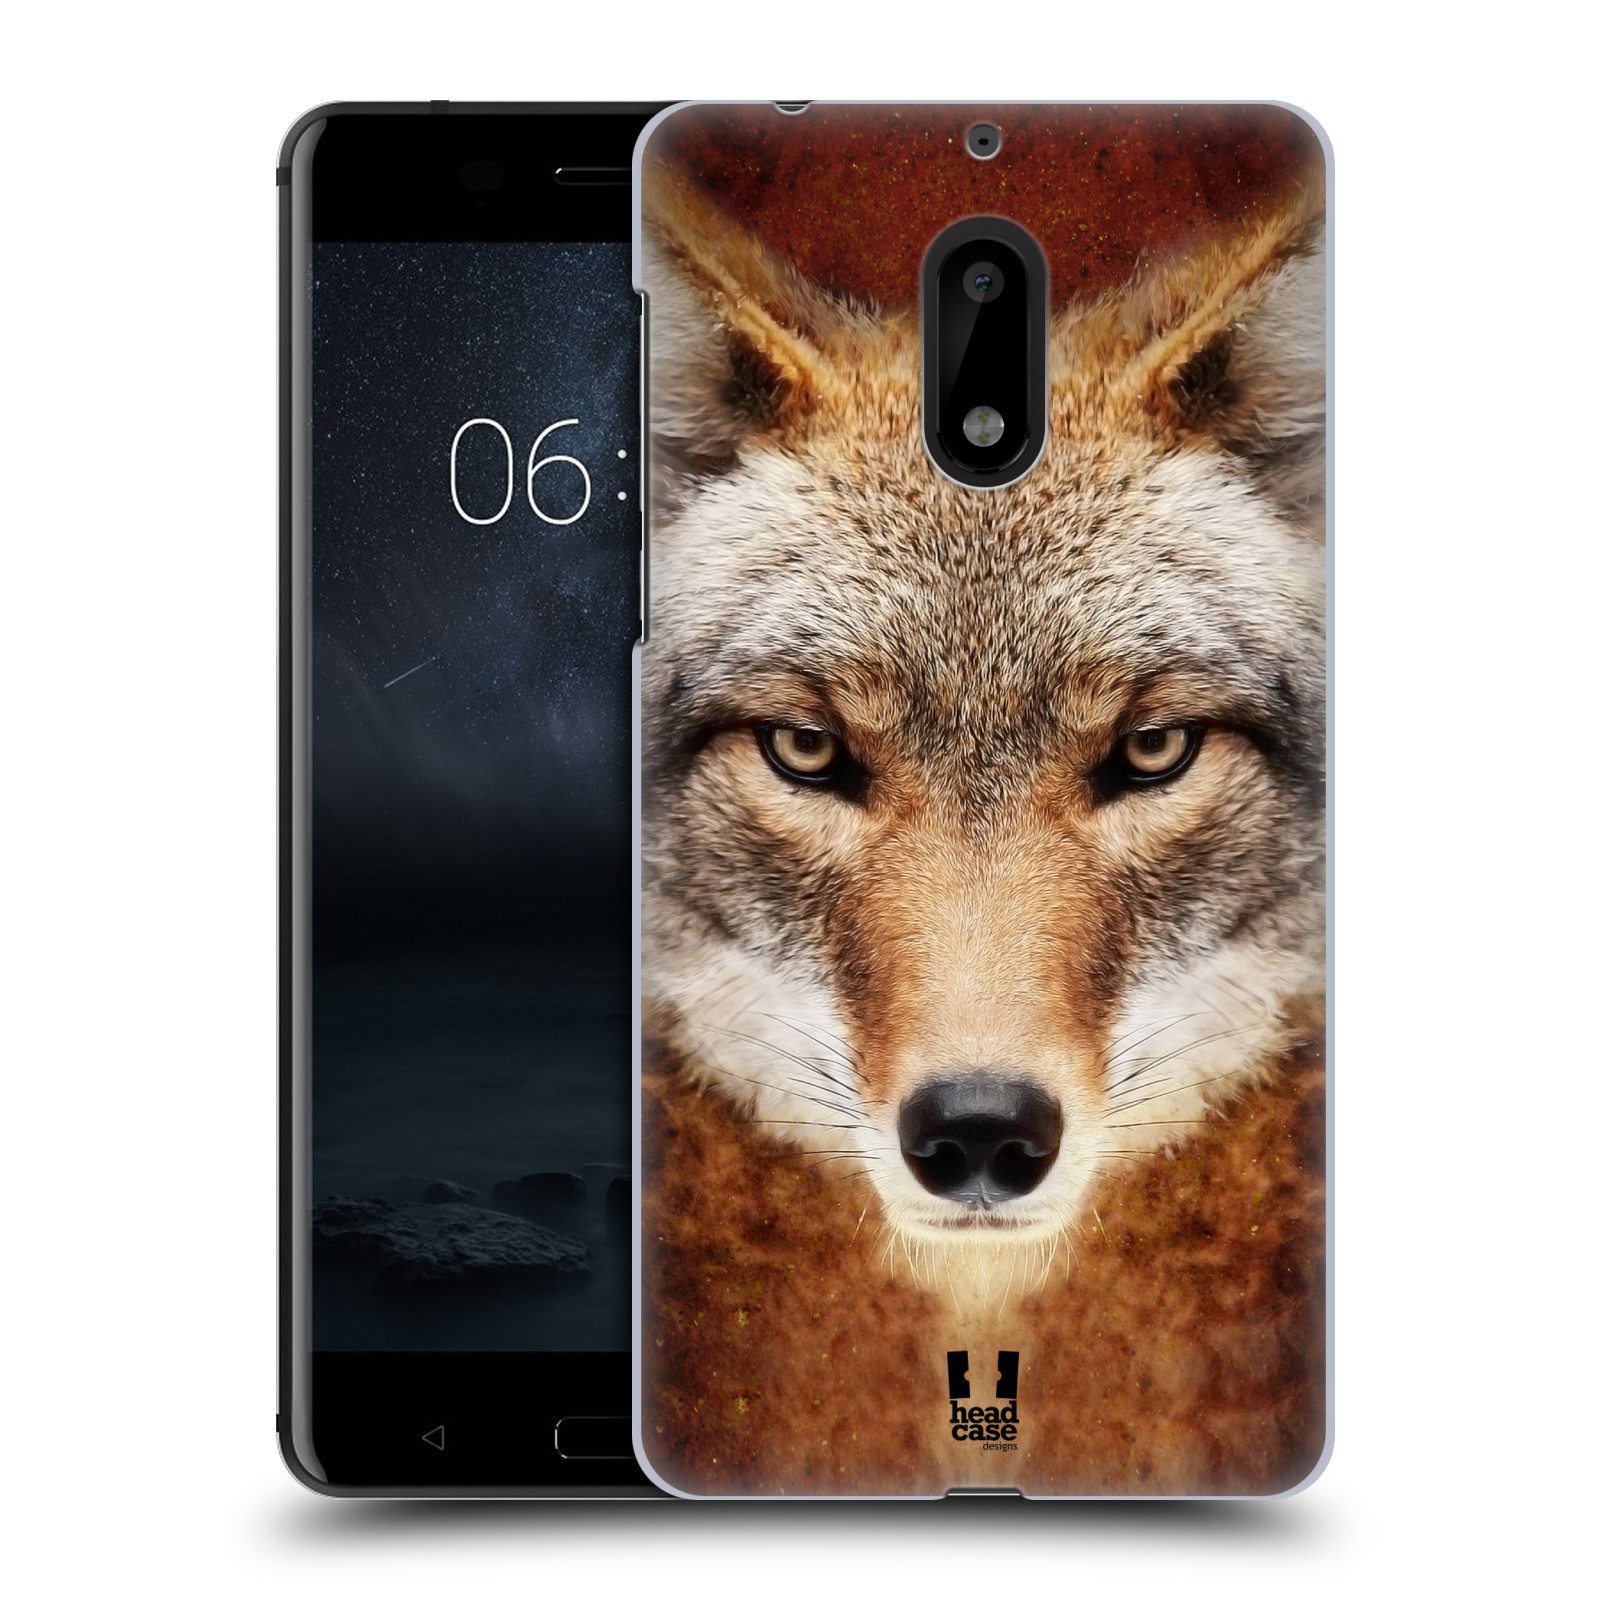 HEAD CASE plastový obal na mobil Nokia 6 vzor Zvířecí tváře kojot